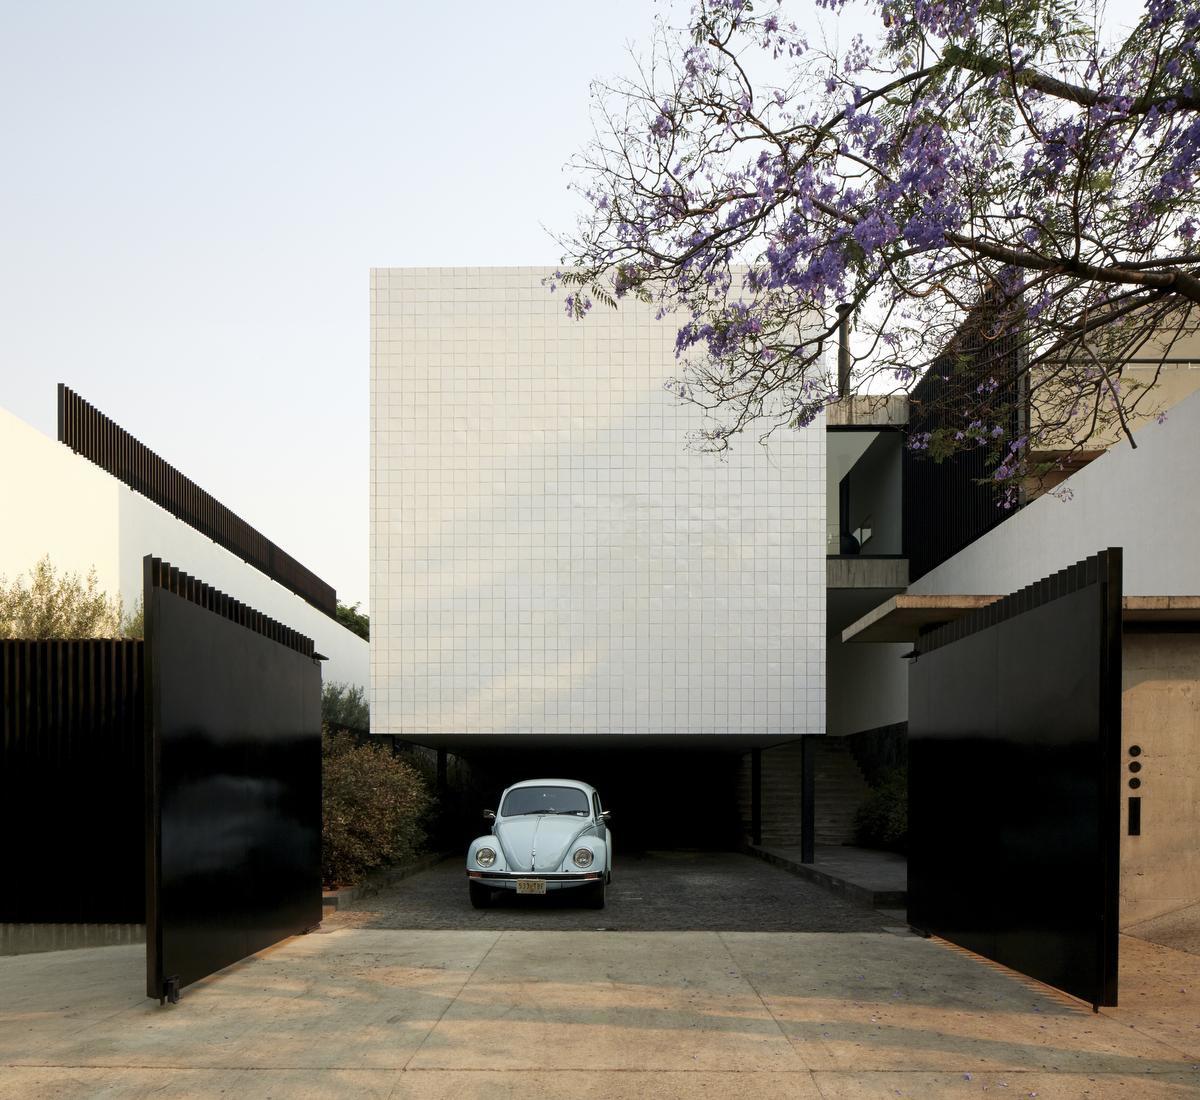 Casa Alpes in Mexico City, een ontwerp van het Mexicaanse architectenbureau Productora.